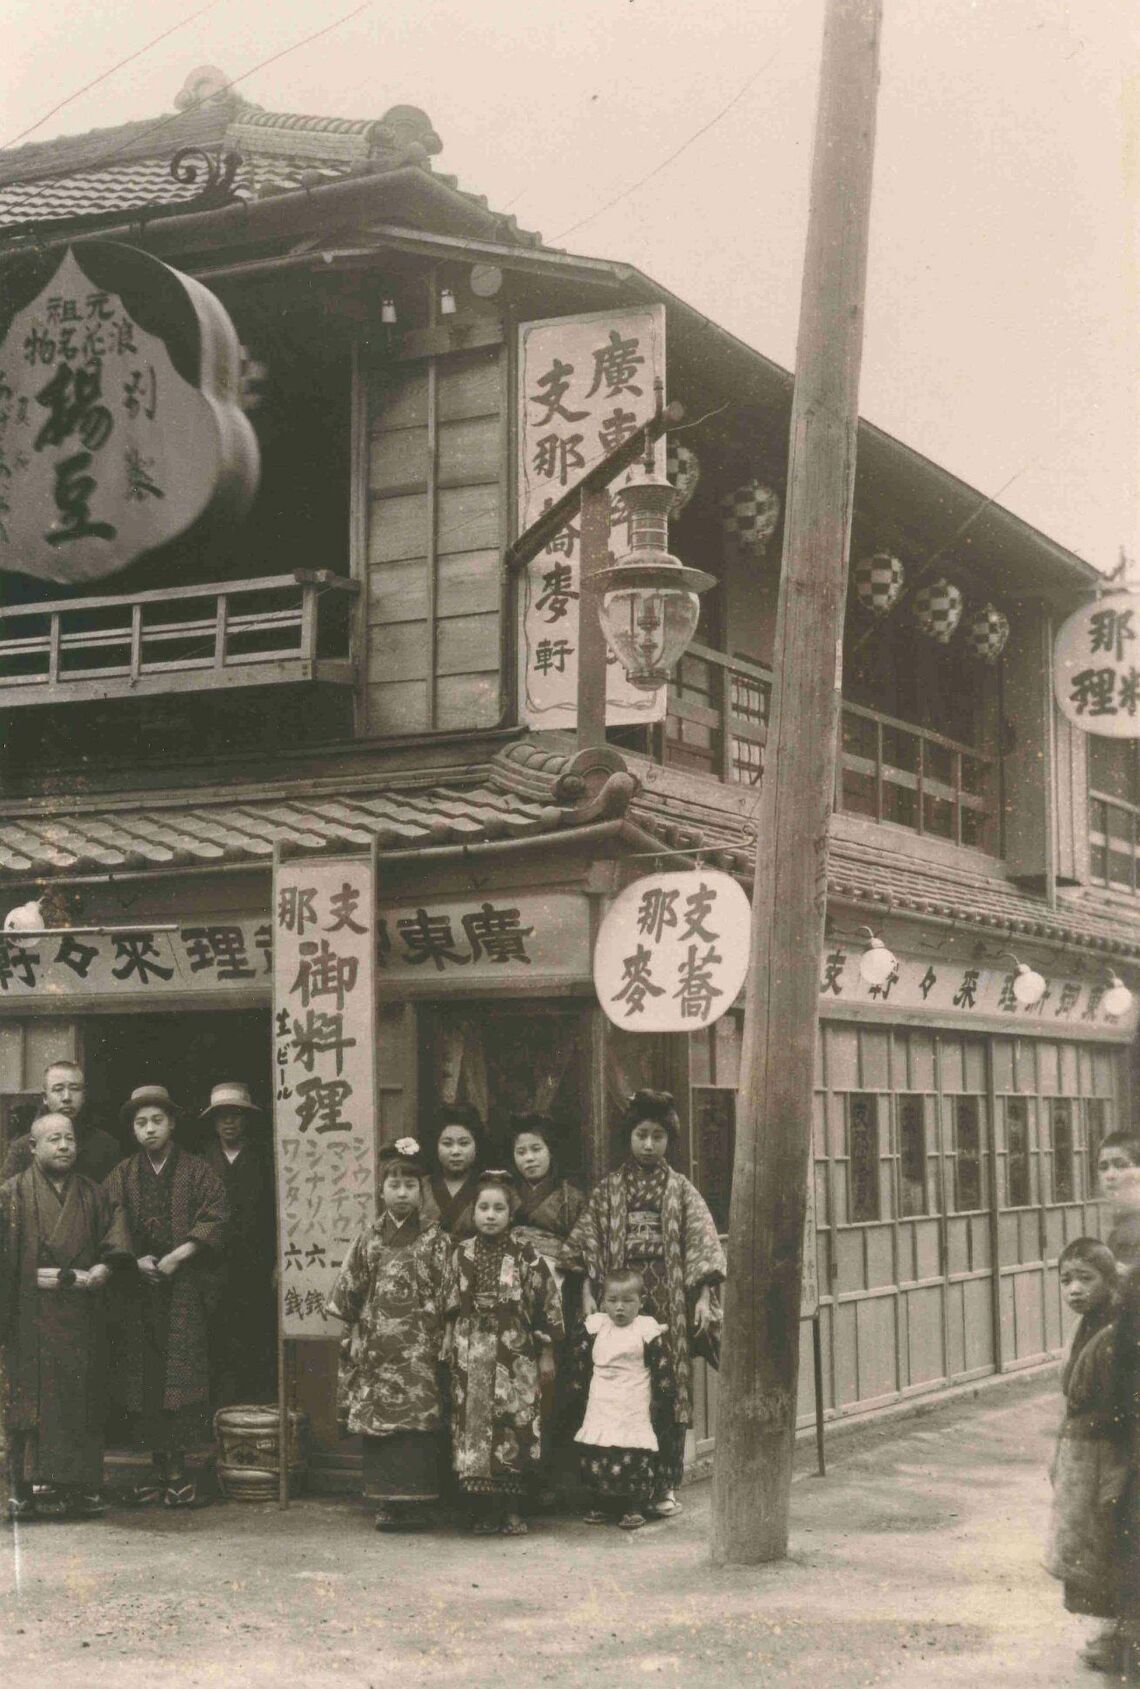 1910年創業の浅草の名店、來々軒。1914年頃の店頭を写した写真では、「シウマイ」の文字が確認できる（画像提供：新横浜ラーメン博物館）